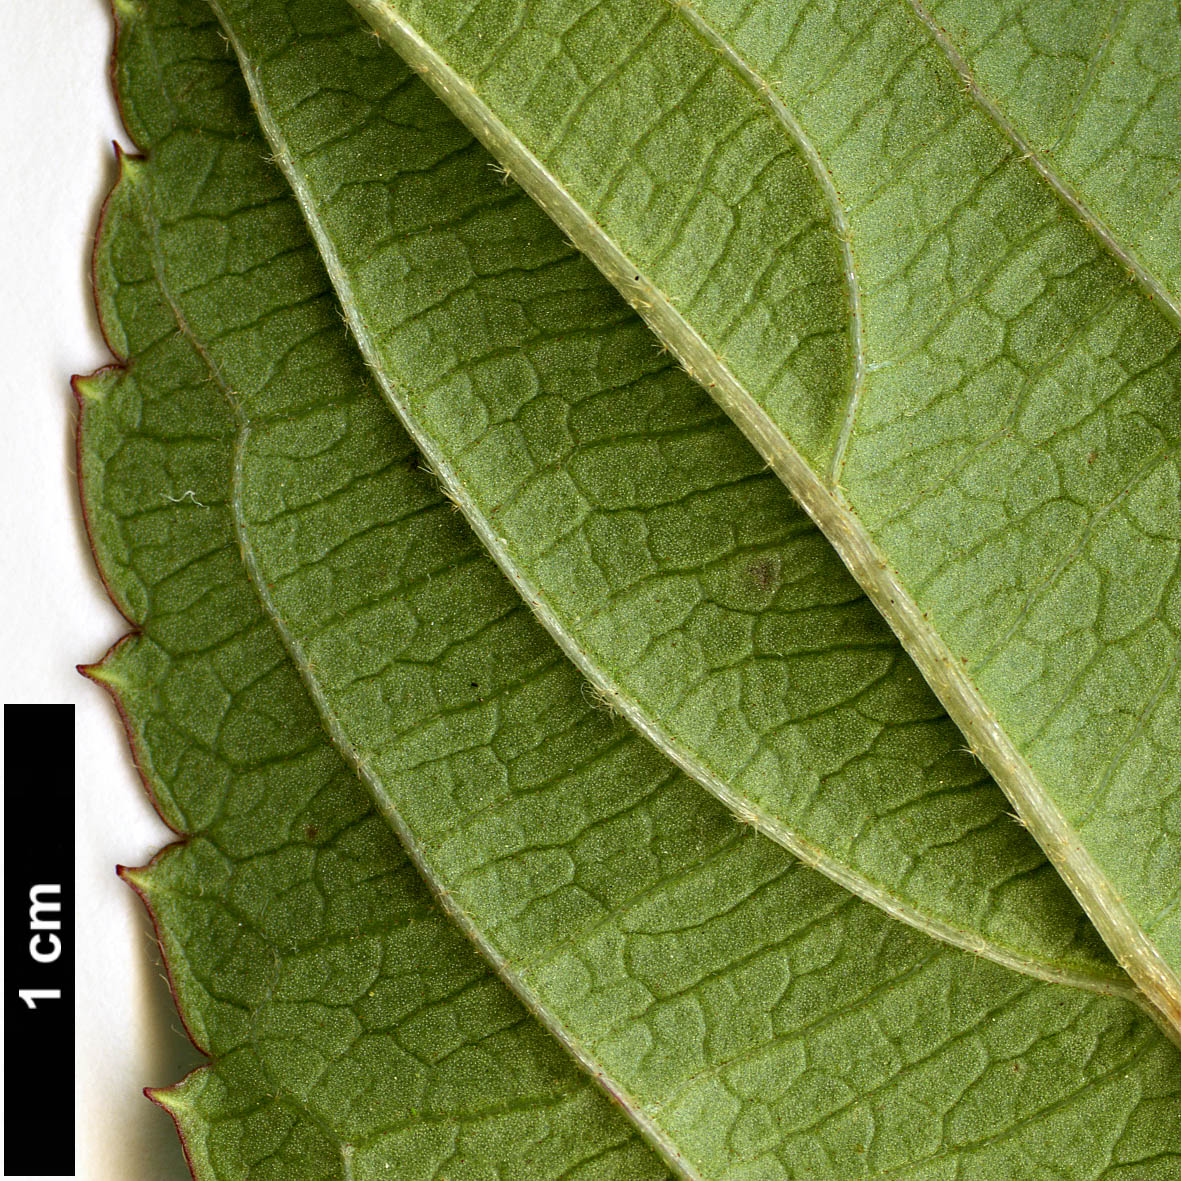 High resolution image: Family: Adoxaceae - Genus: Viburnum - Taxon: erubescens